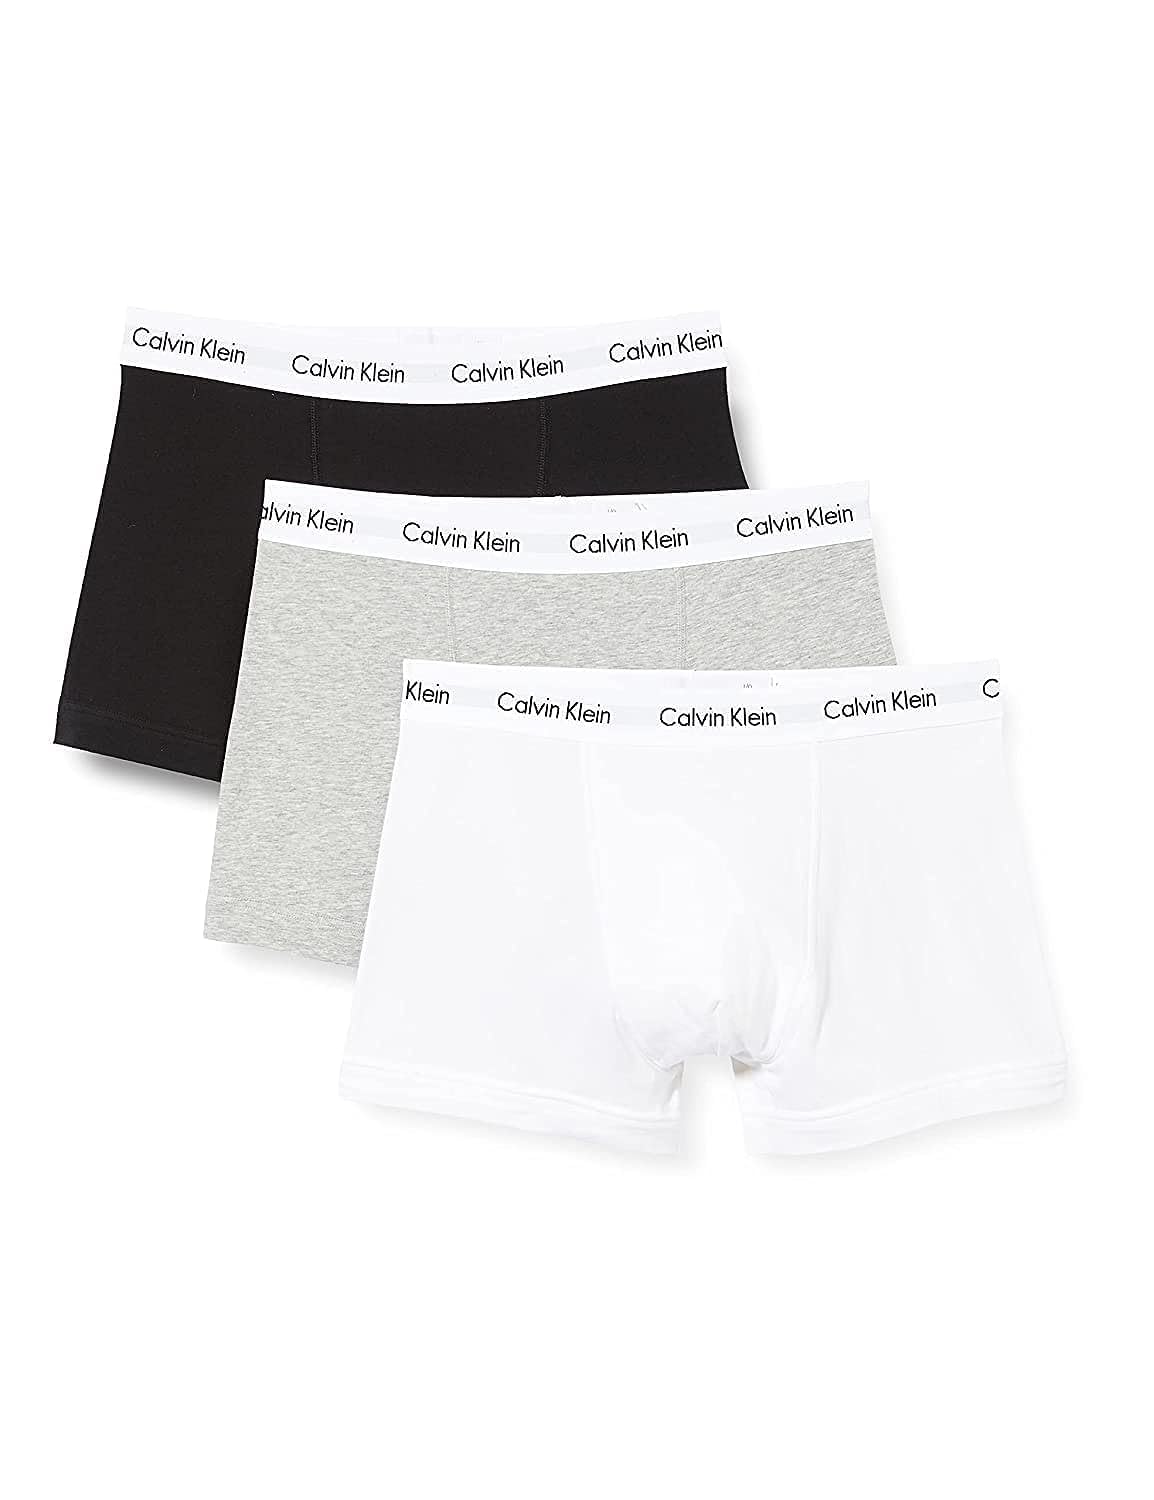 Calvin Klein Herren 3er Pack Boxershorts Trunks Baumwolle mit Stretch, Schwarz ,B-Cool Melon/Glxy Gry/Brn Belt Lg, L, Black/White/Grey Heather, S